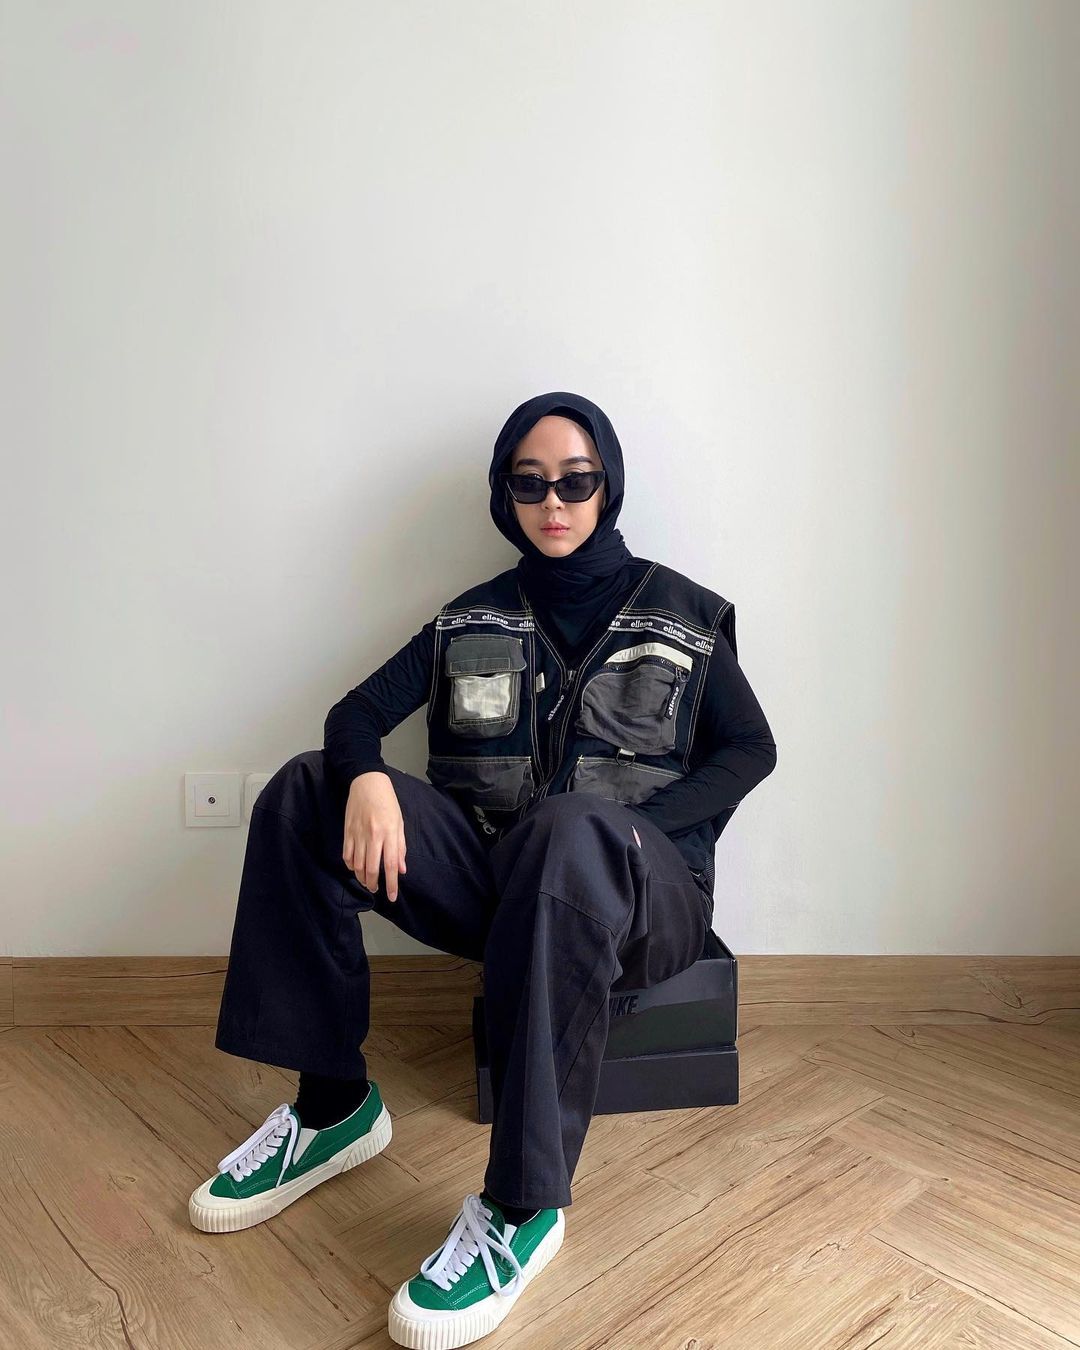 Mafia style fashion hijab